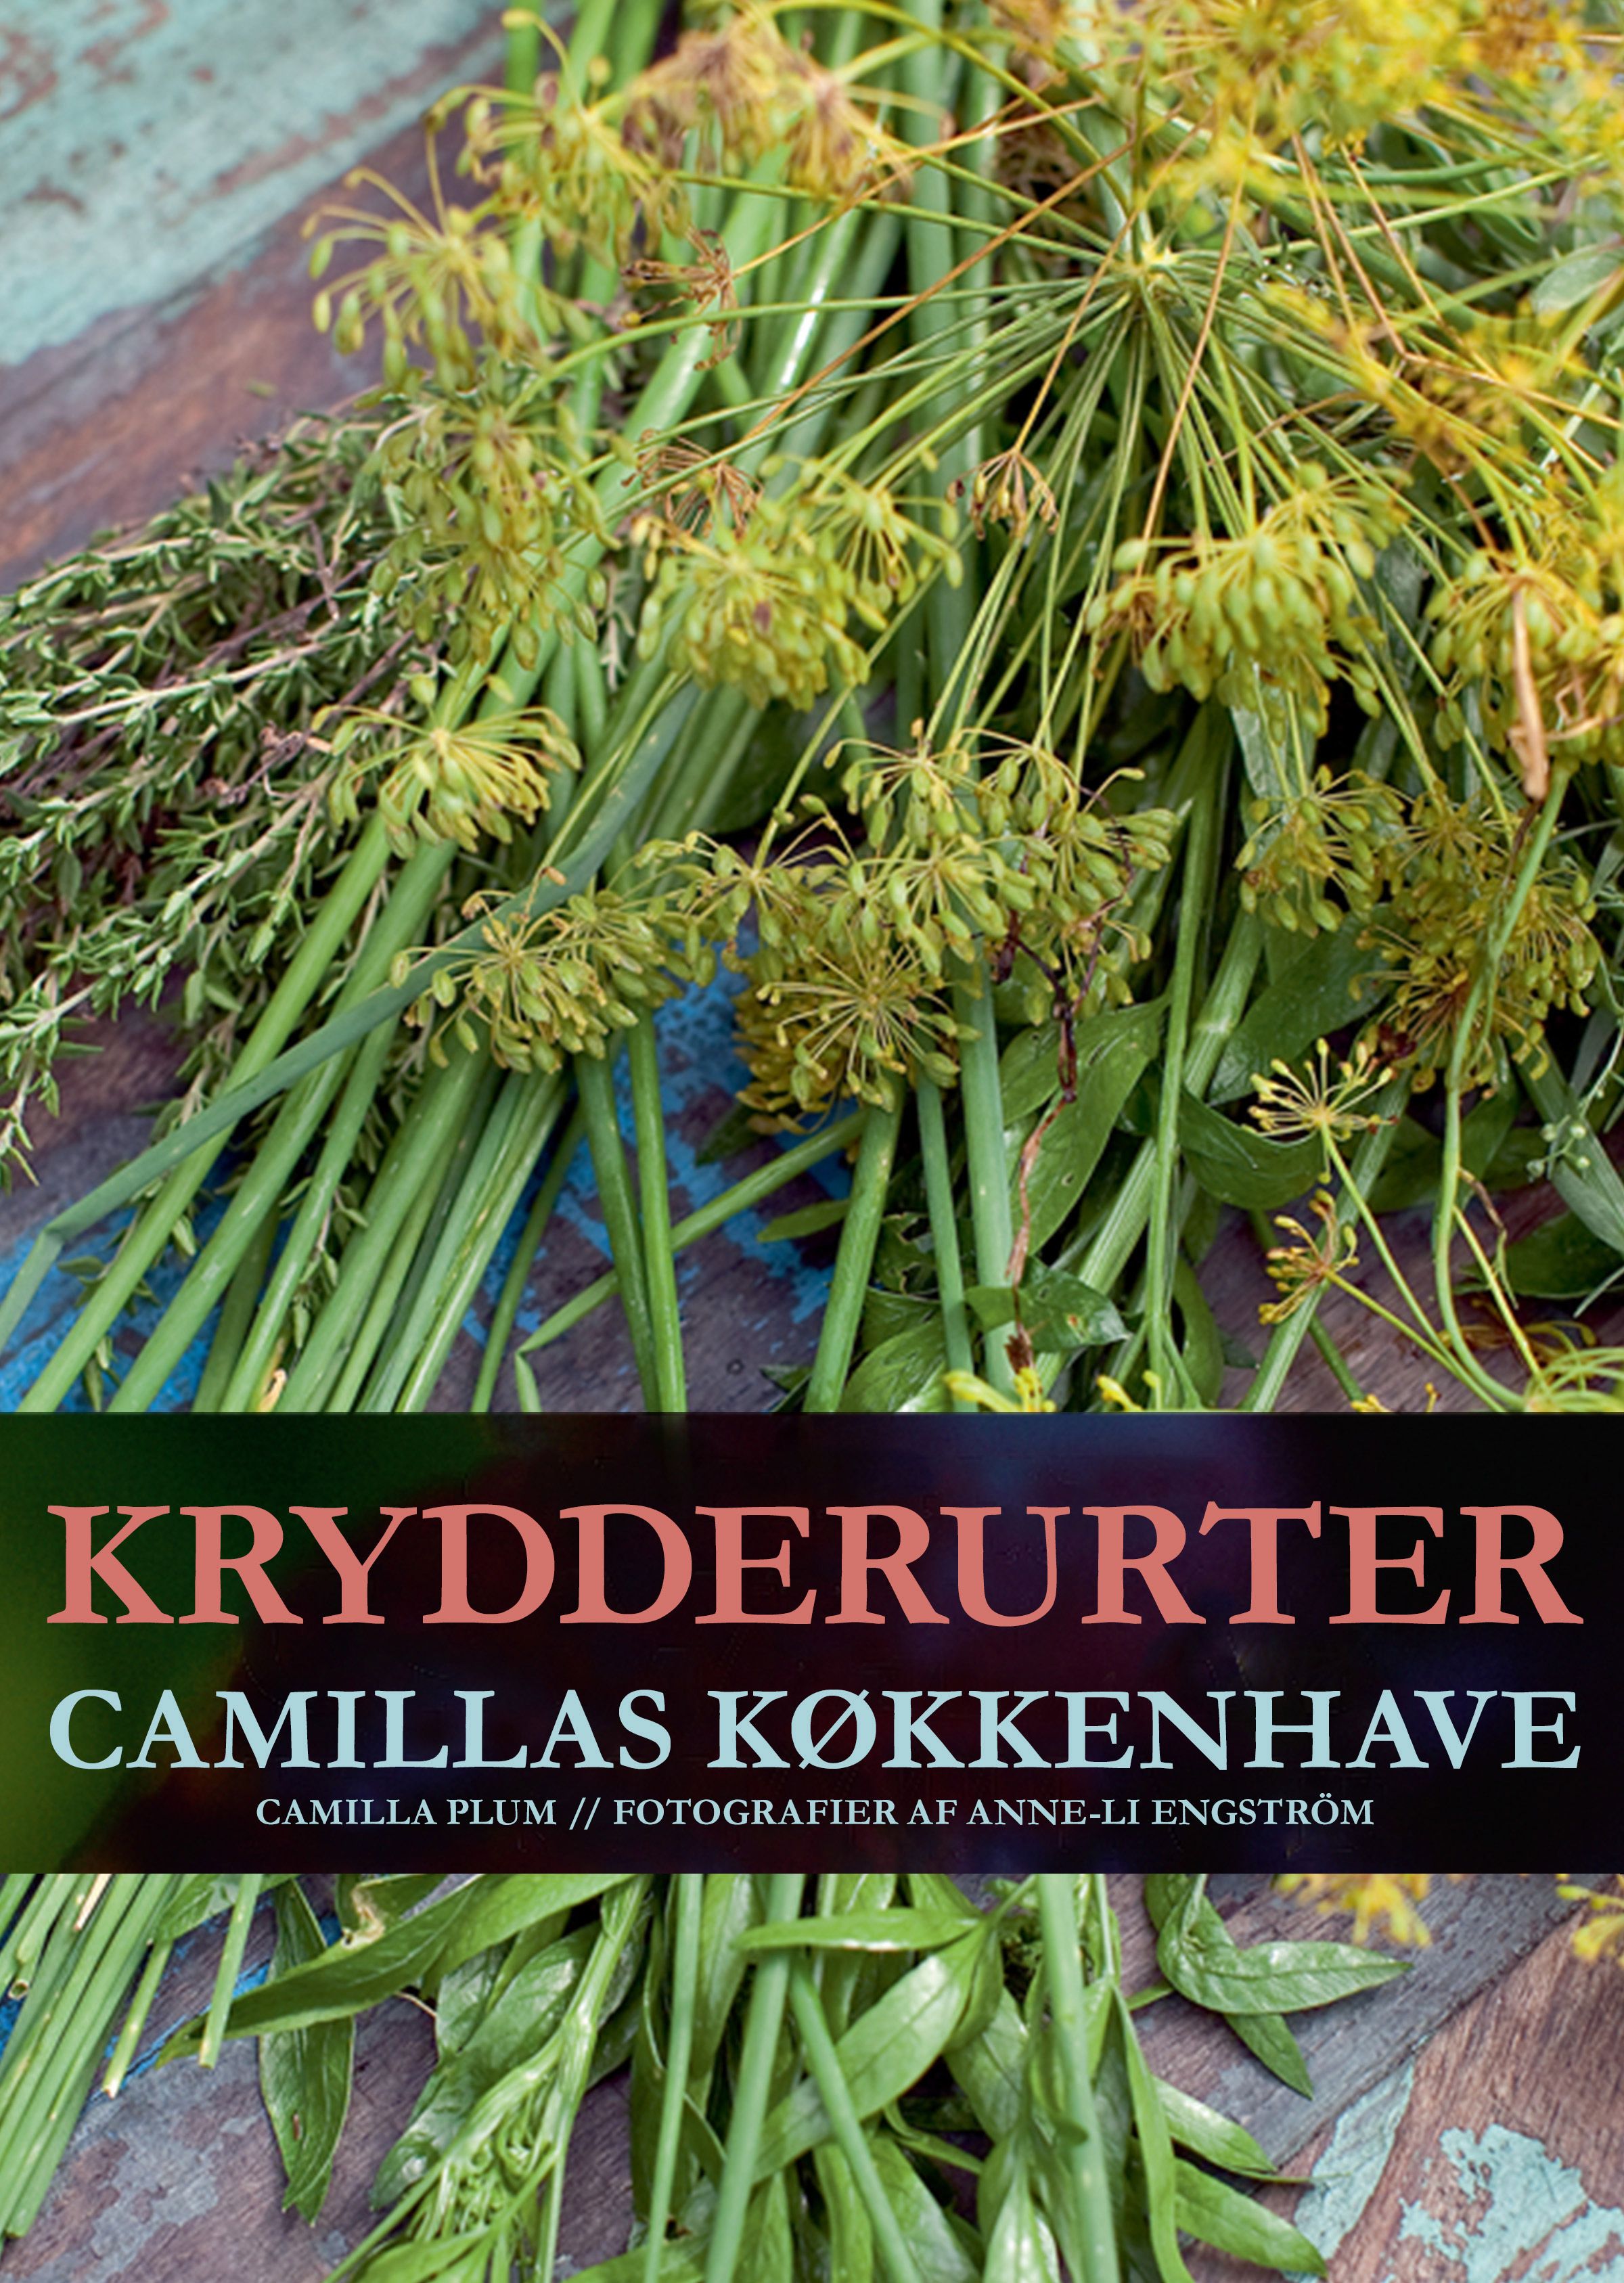 Krydderurter - Camillas køkkenhave, e-bog af Camilla Plum